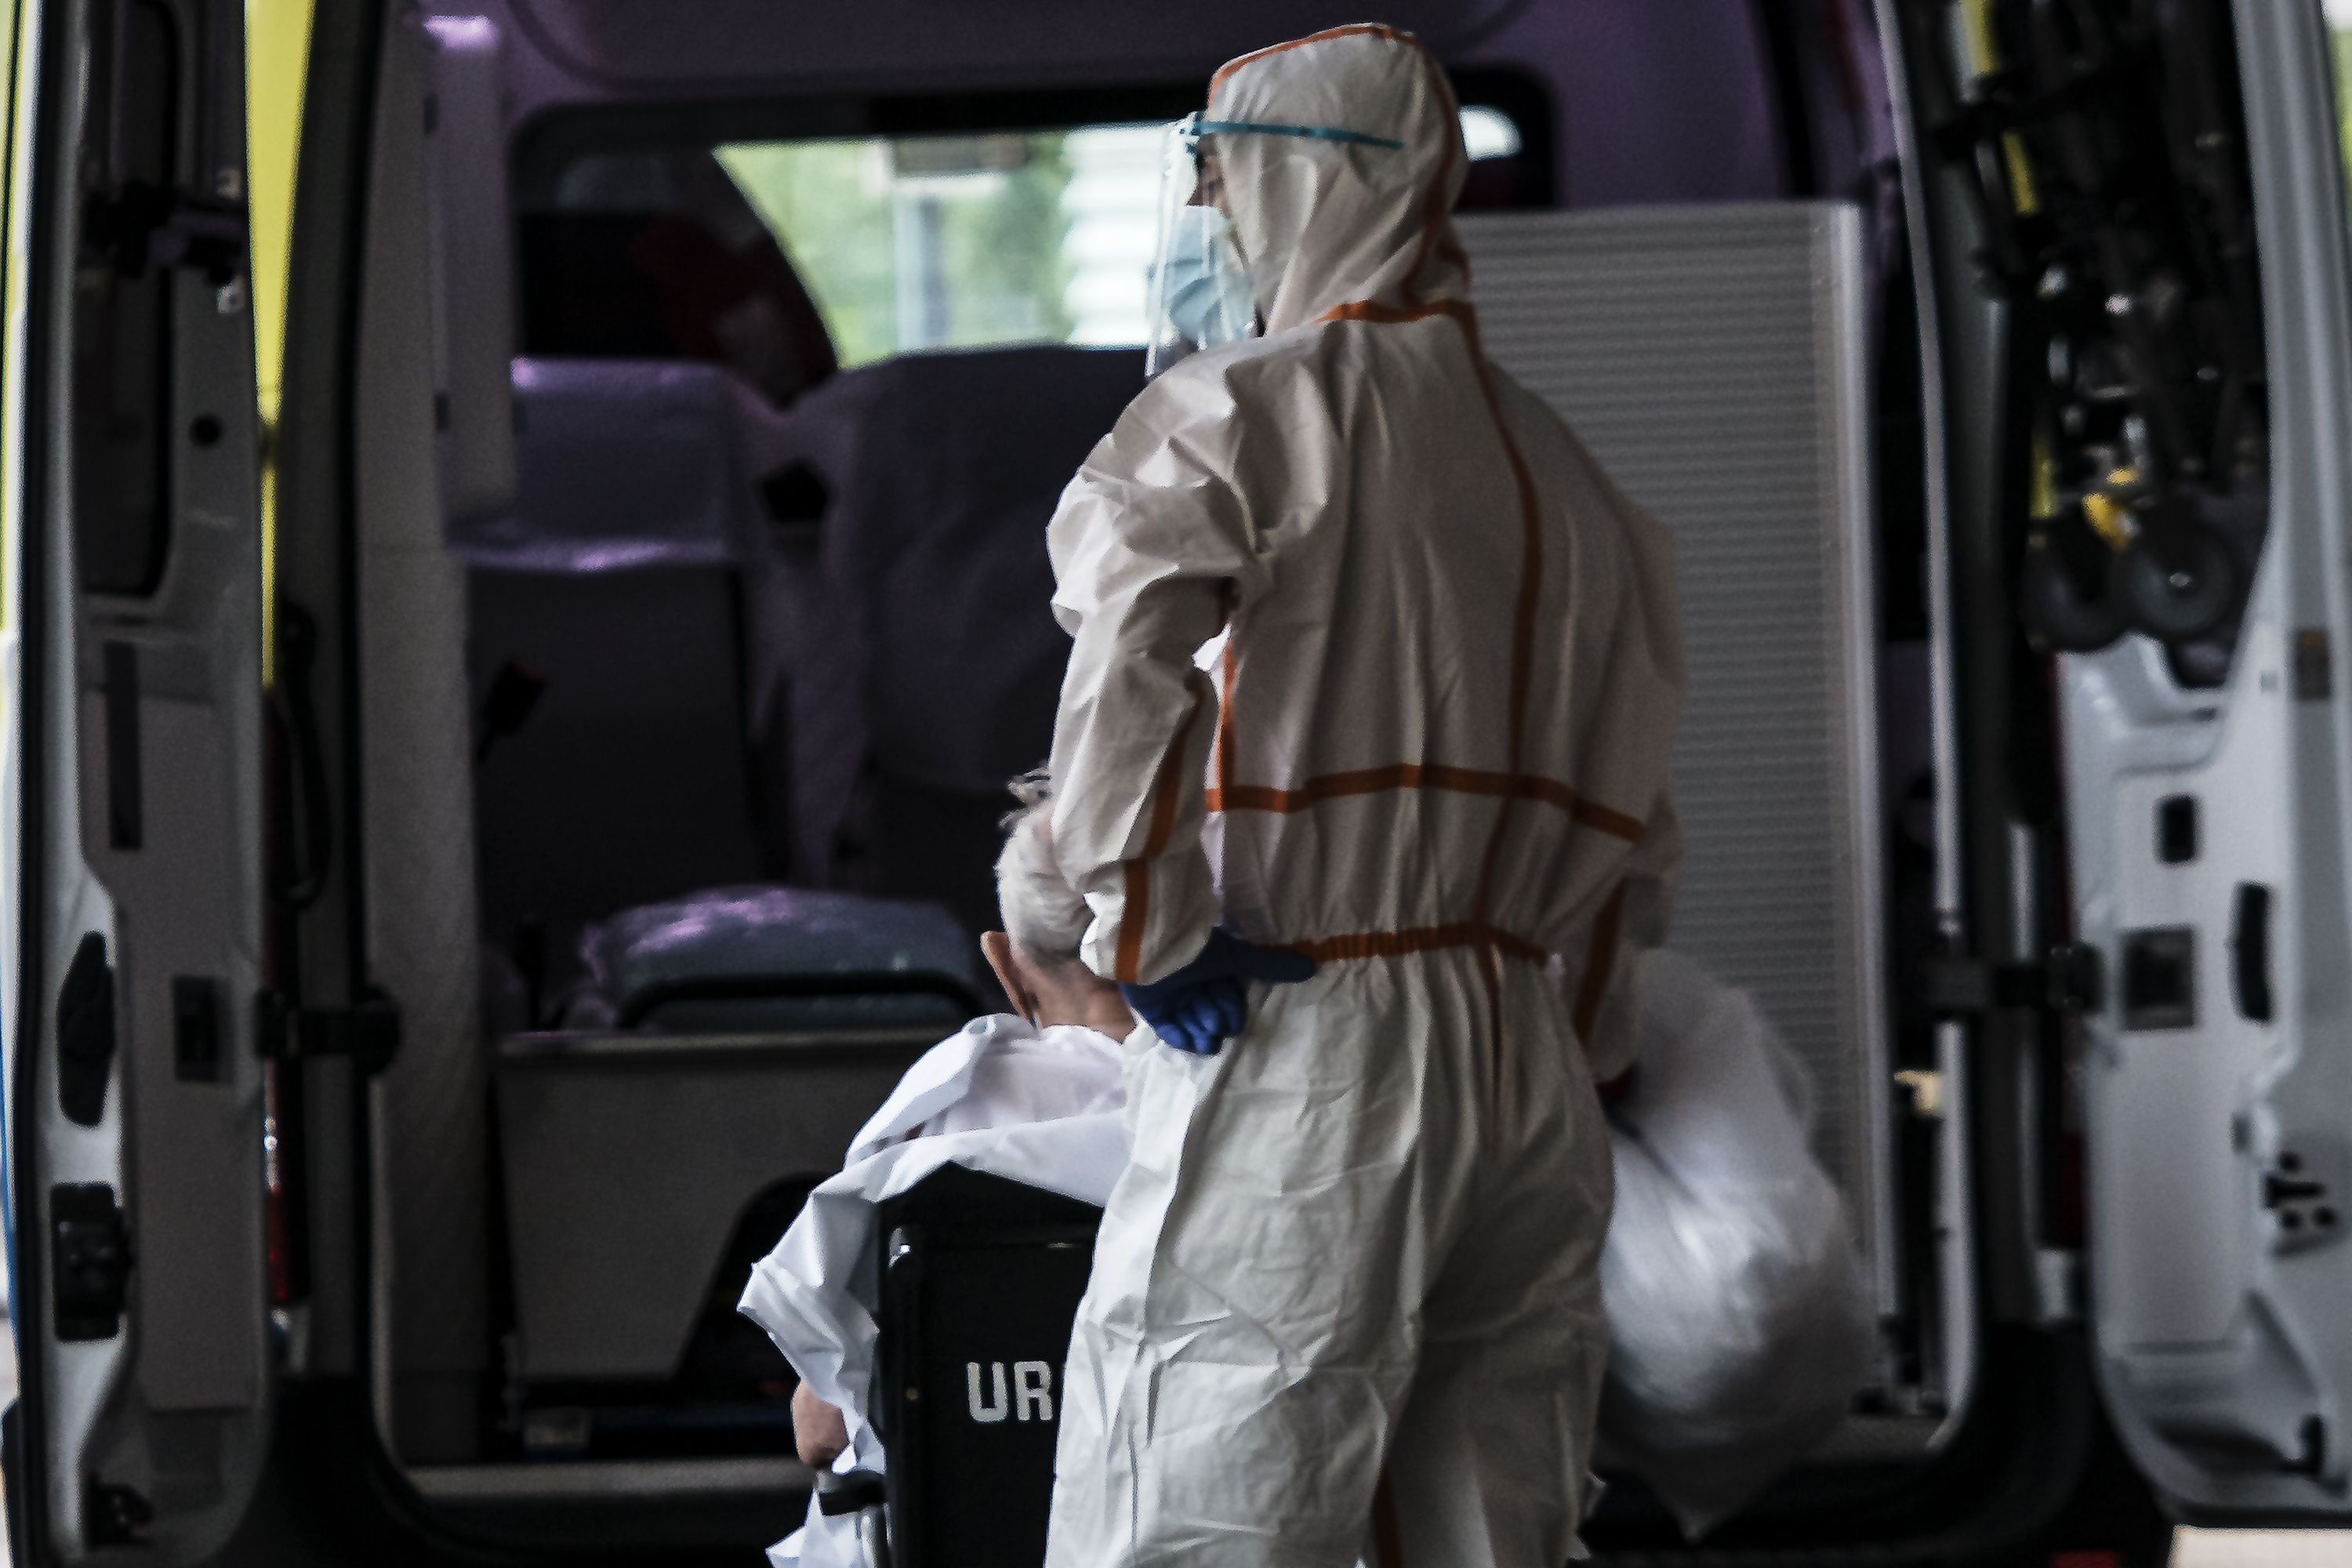 Las residencias superaron las 600 muertes diarias en el peor momento de la pandemia, según el INE